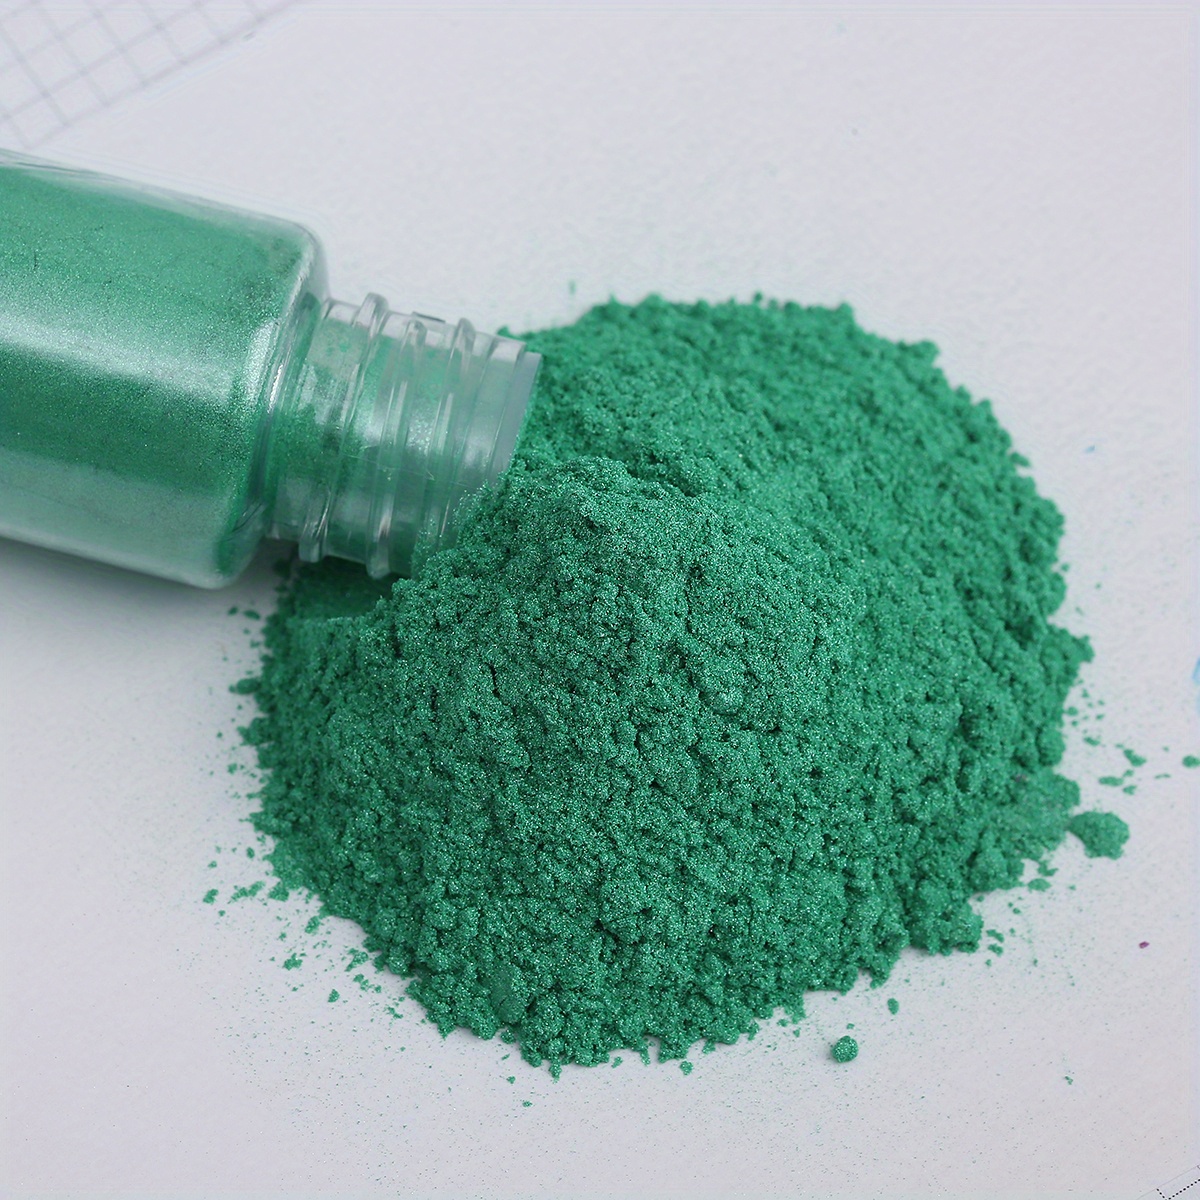 True green luxury mica colorant pigment powder cosmetic grade 2 oz